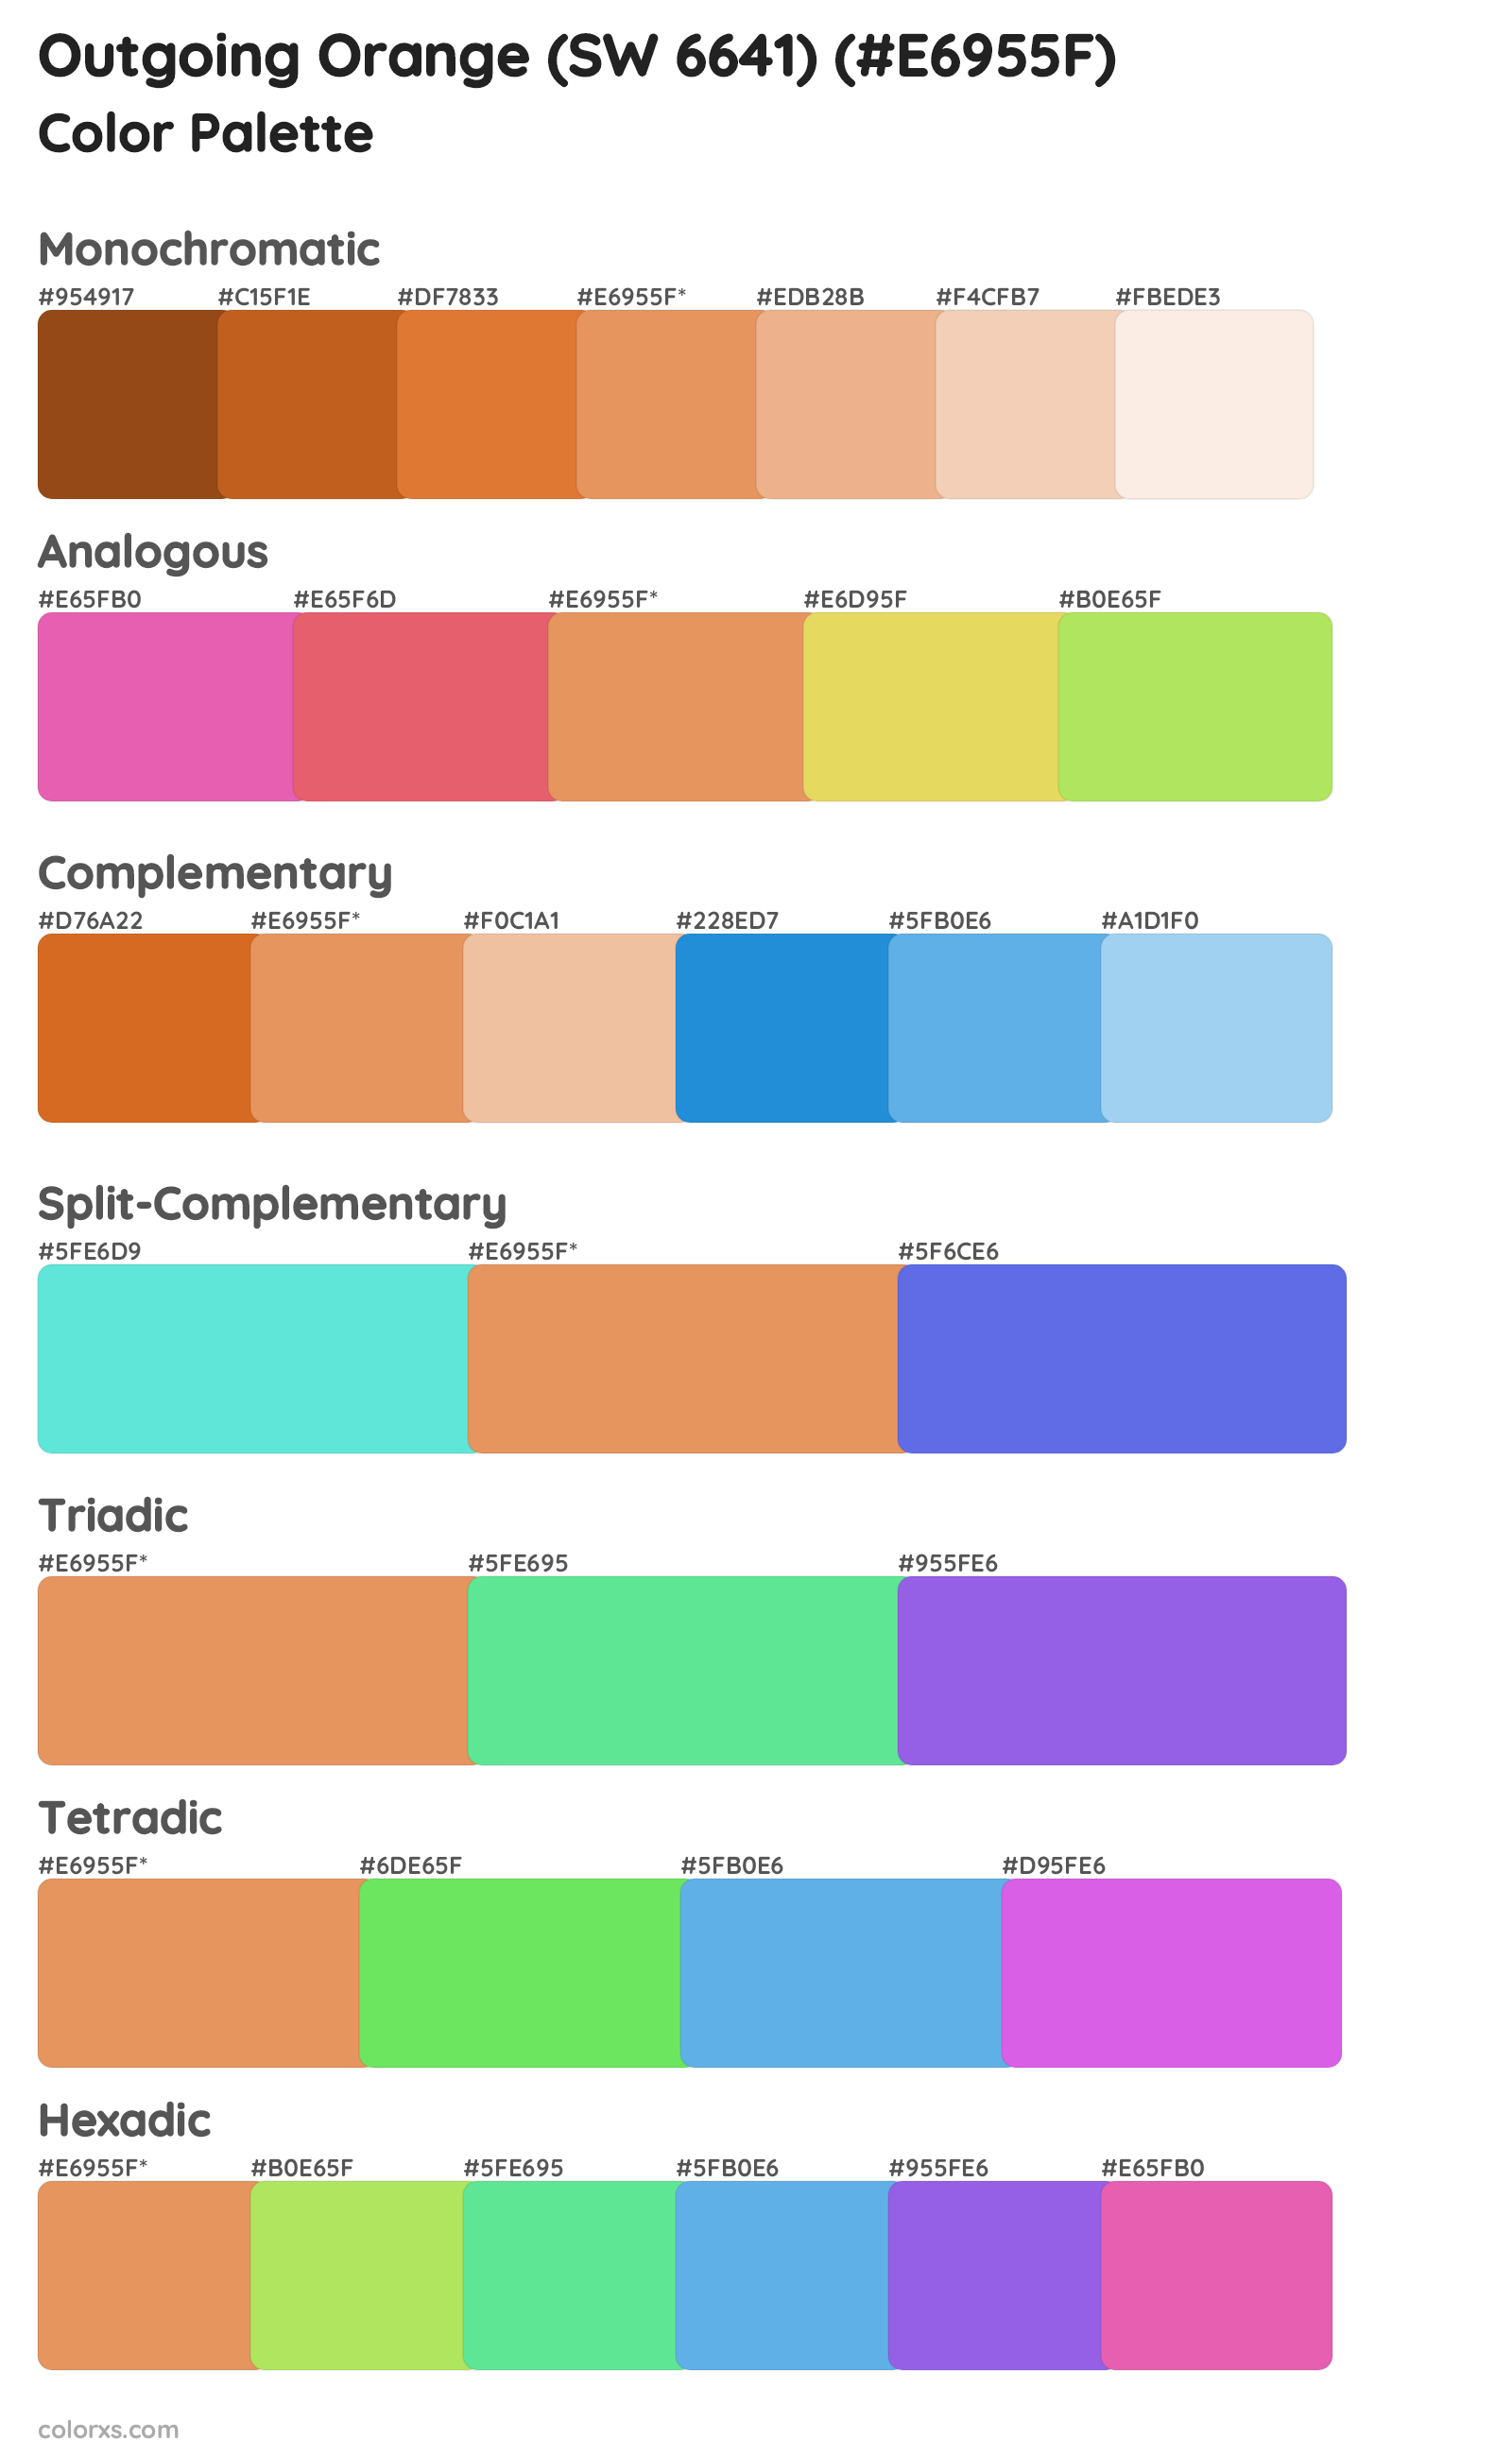 Outgoing Orange (SW 6641) Color Scheme Palettes